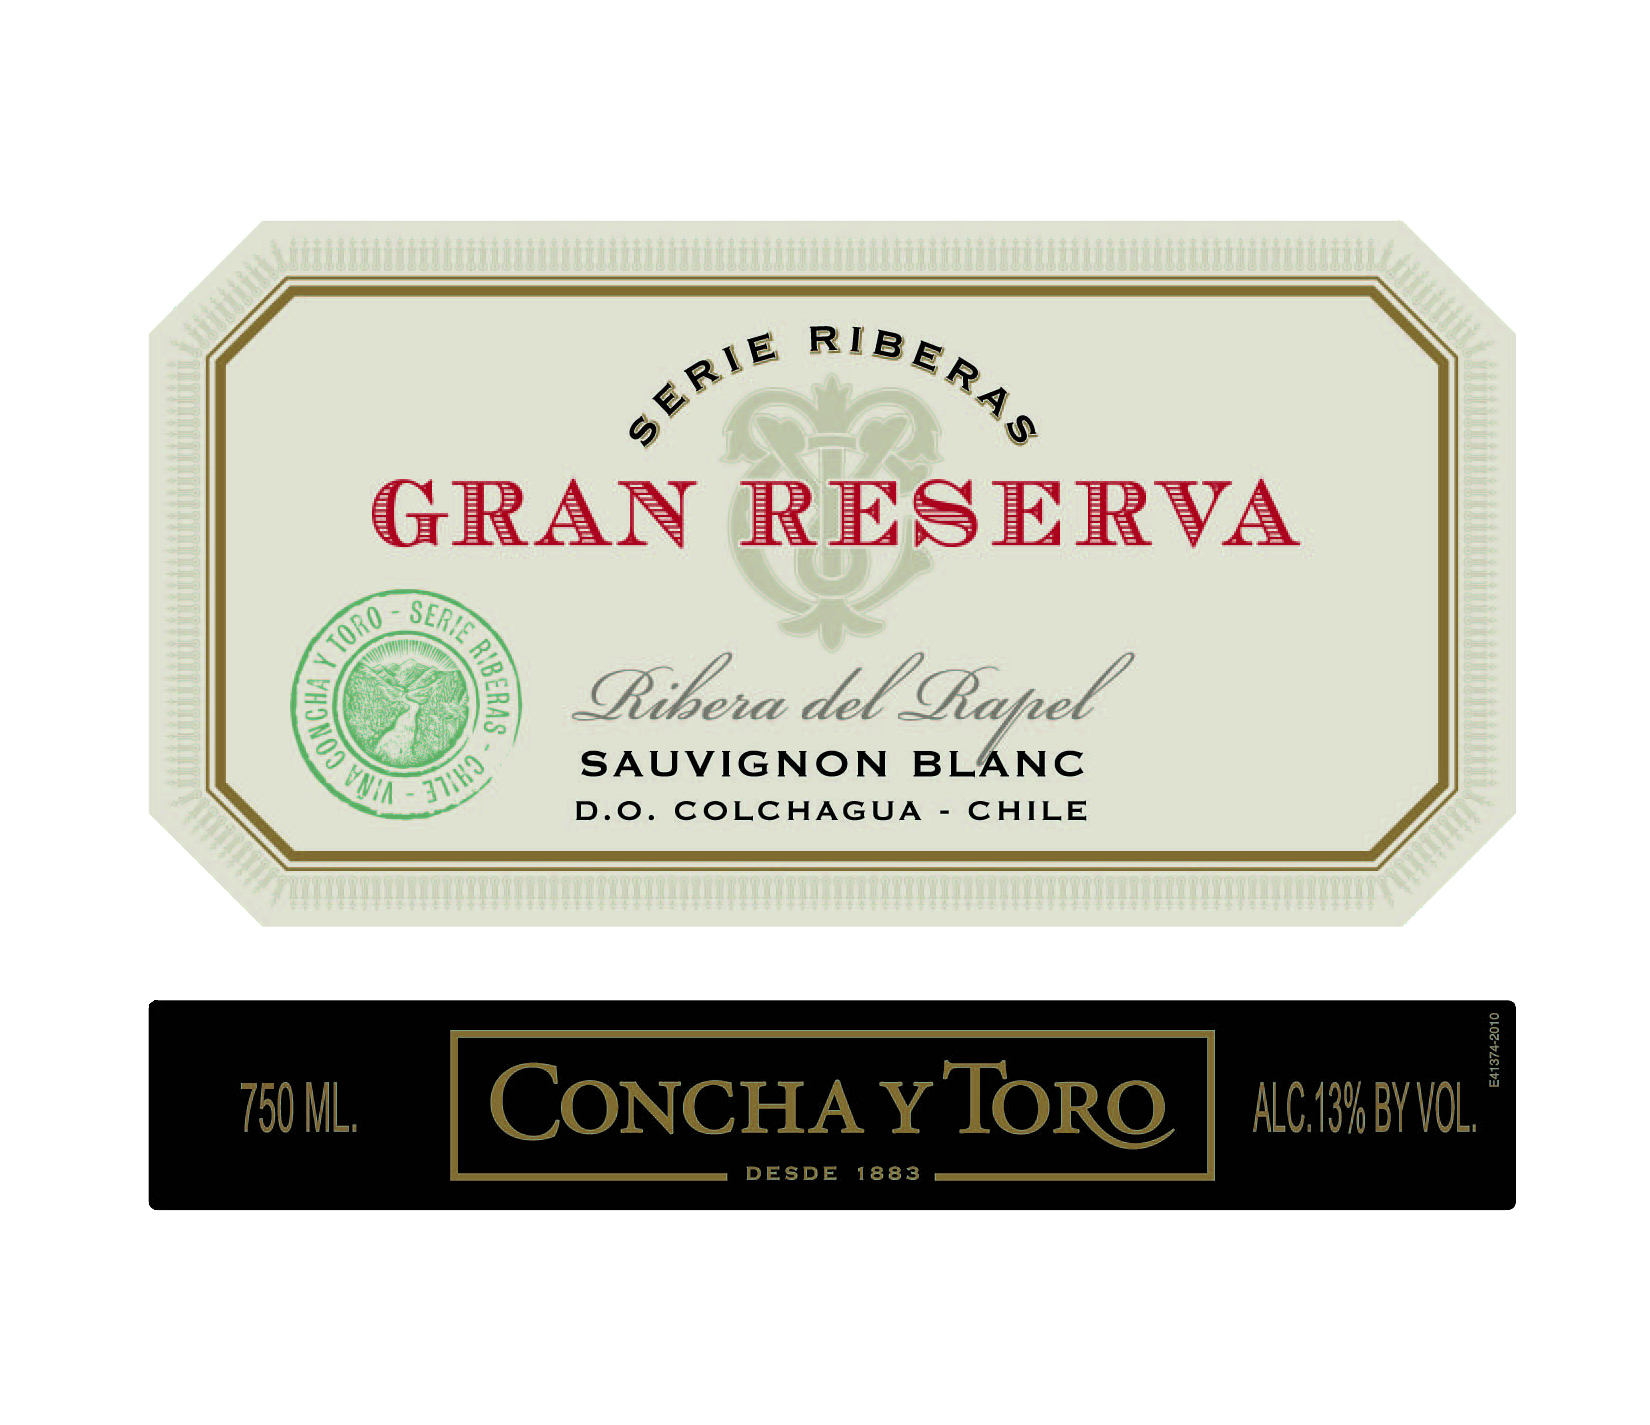 2012 Concha Y Toro Sauvignon Blanc Serie Riberas Gran Reserva Colchagua - click image for full description